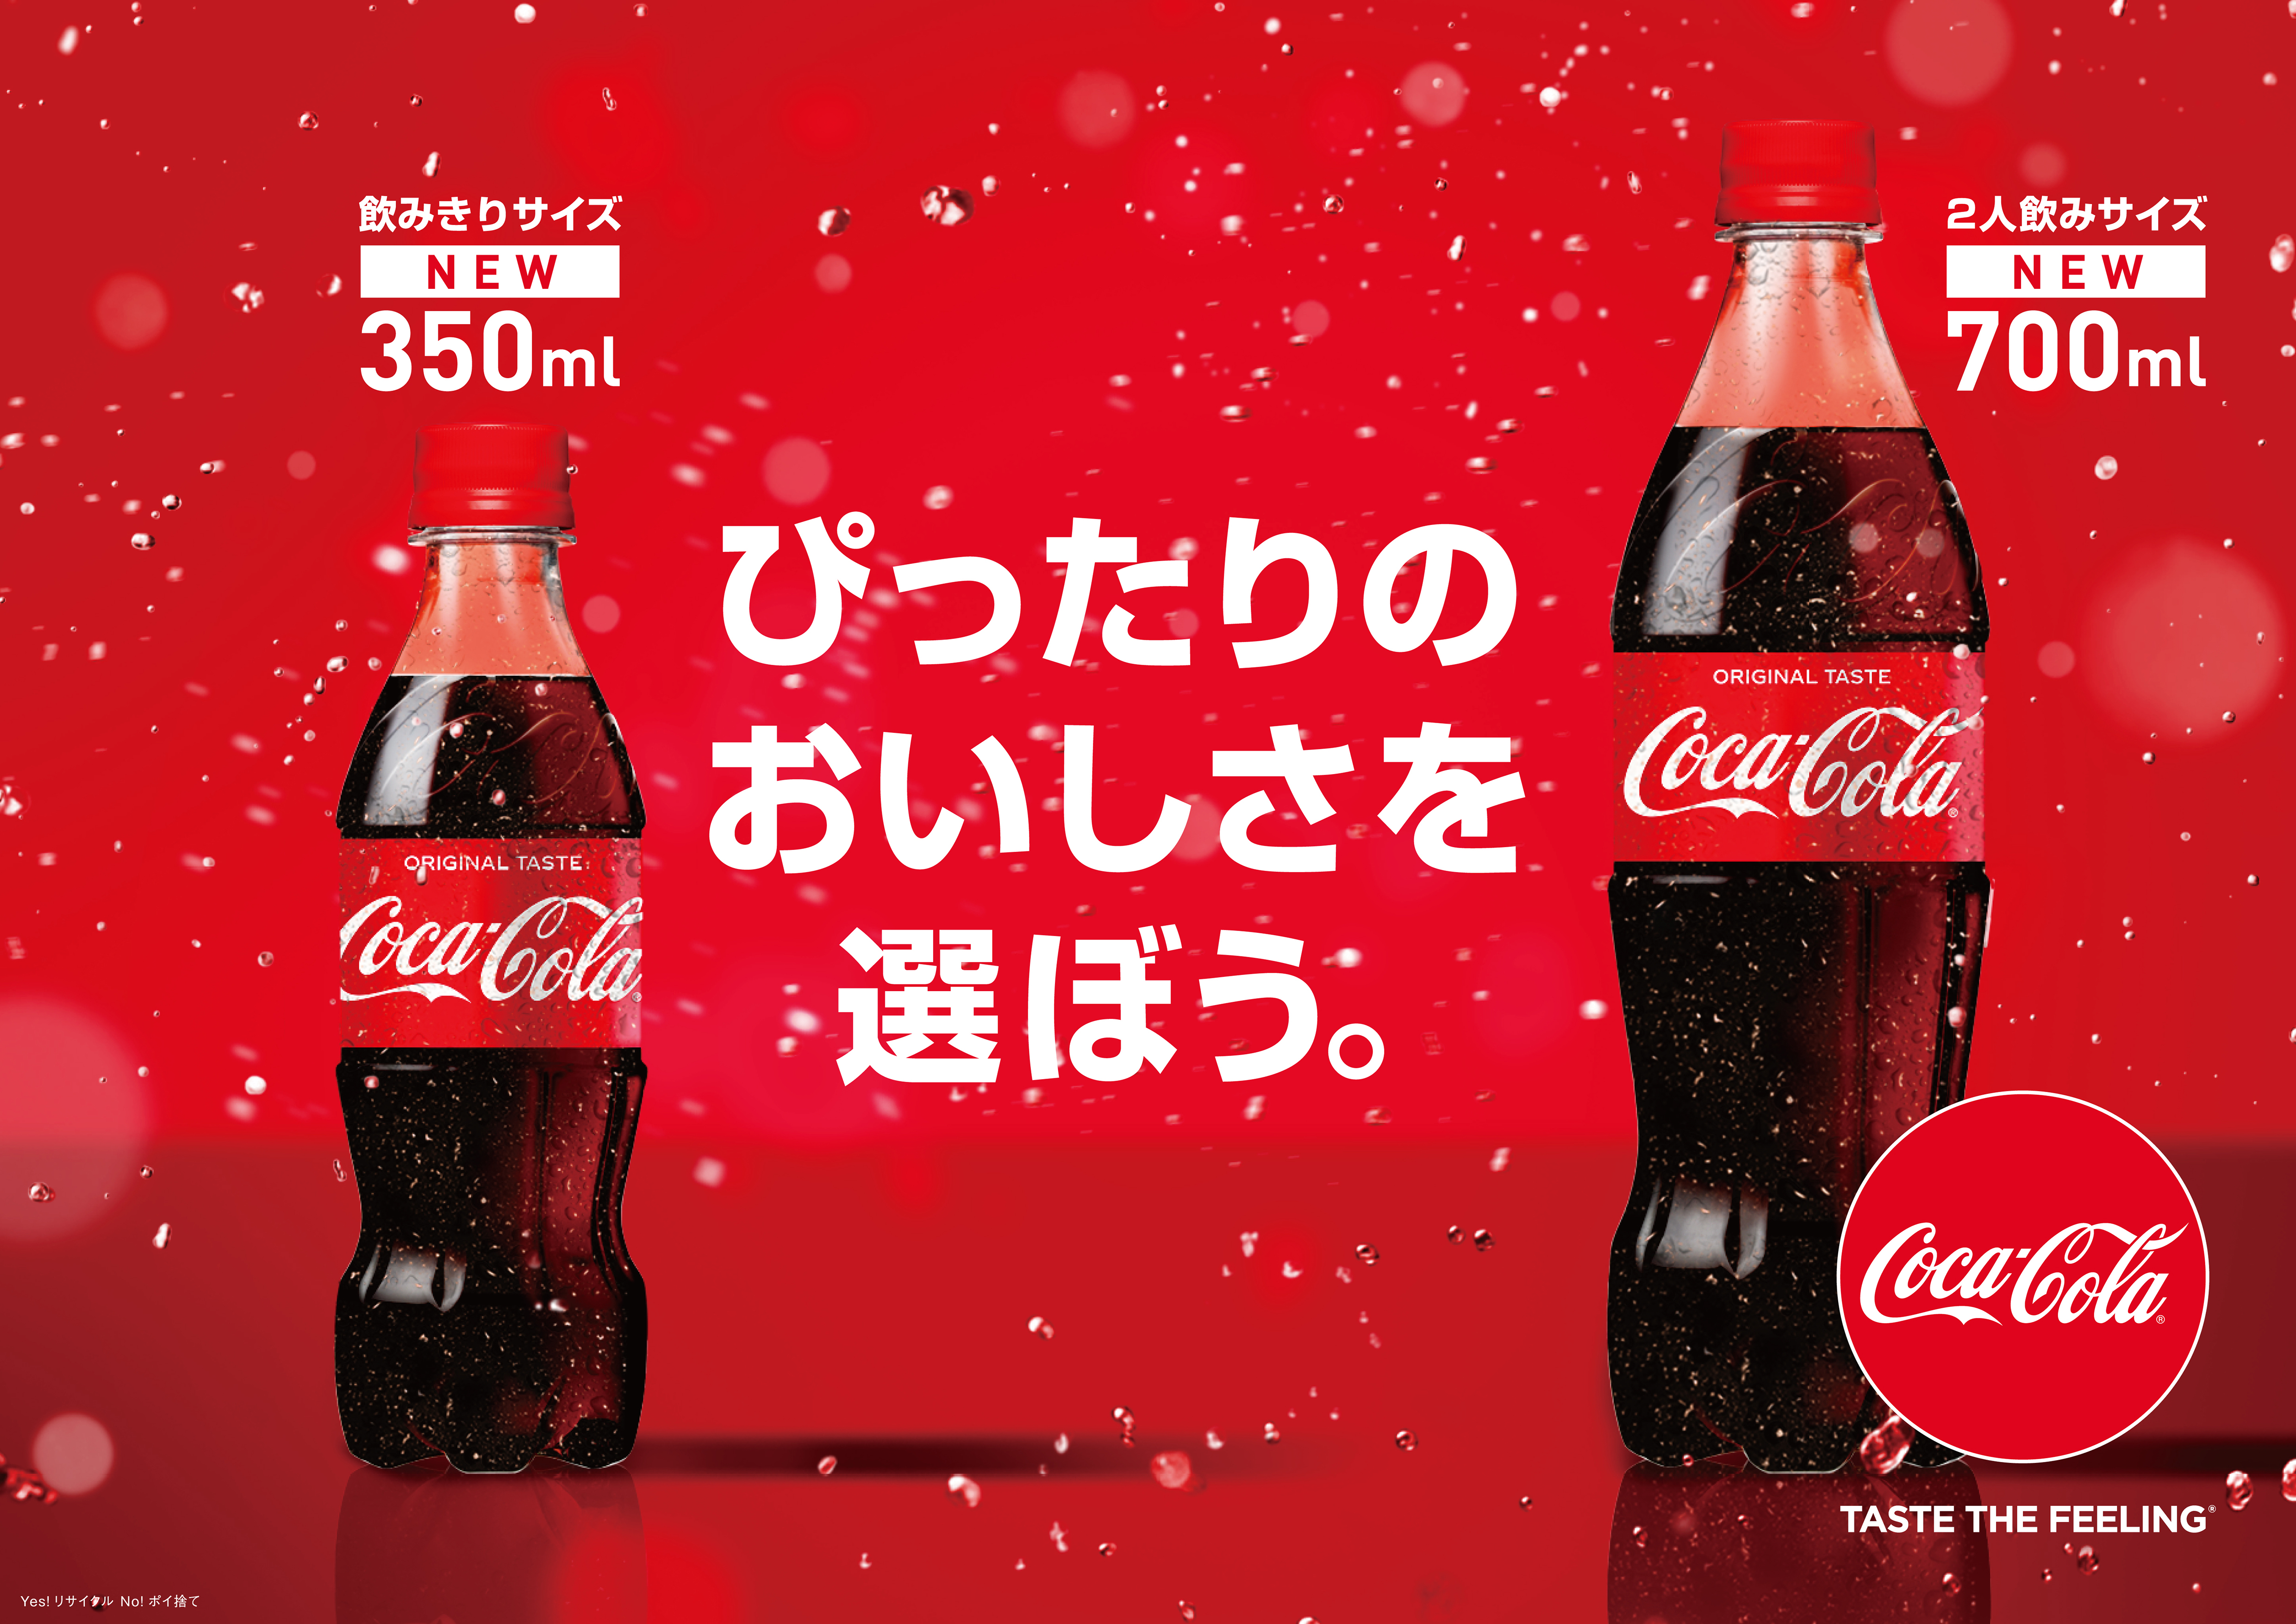 新提案 お持ち帰りに最適な新容器サイズ いつでもどこでも コカ コーラ ならではのおいしさを コカ コーラ 350ml Pet 700ml Pet プレスリリース コラム ニューズウィーク日本版 オフィシャルサイト